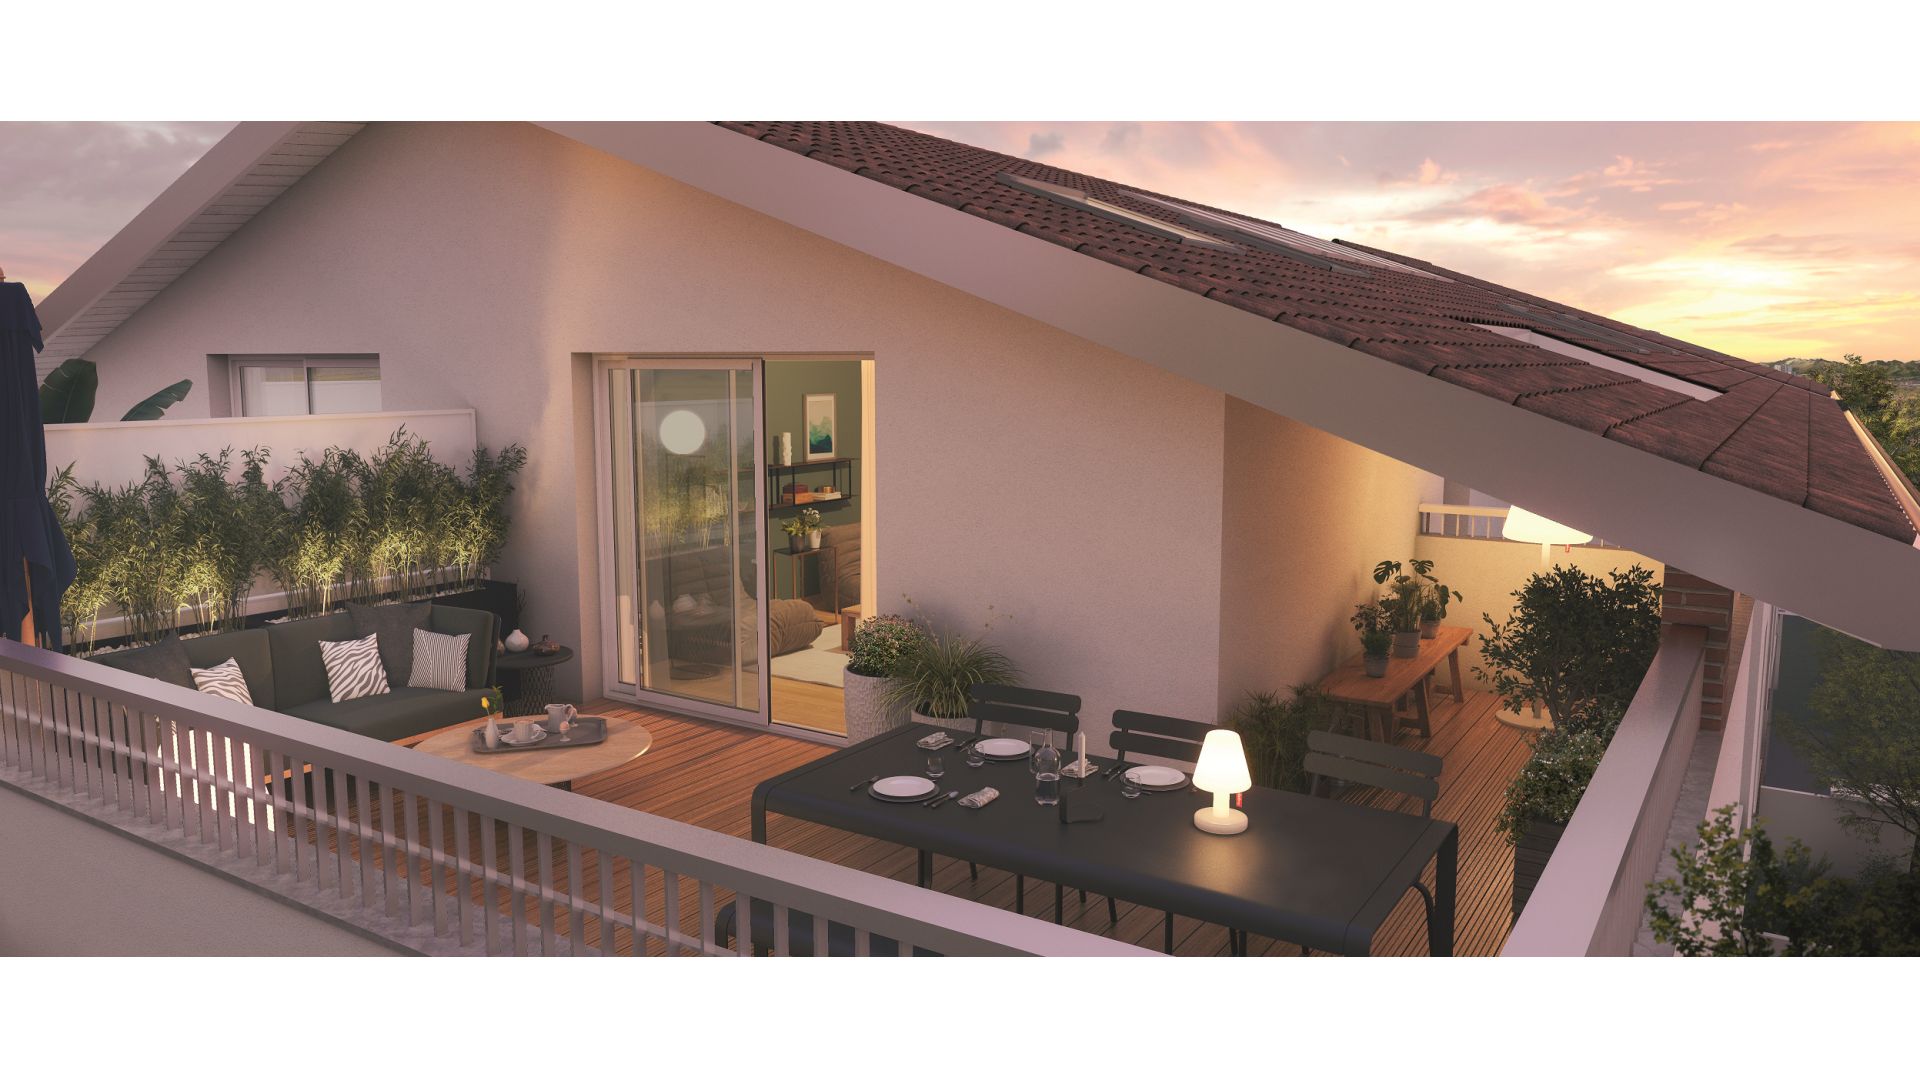 Greencity immobilier - achat appartements neufs du T2 au T4 - Résidence Villa Parme - 31240 L'Union - vue terrasse